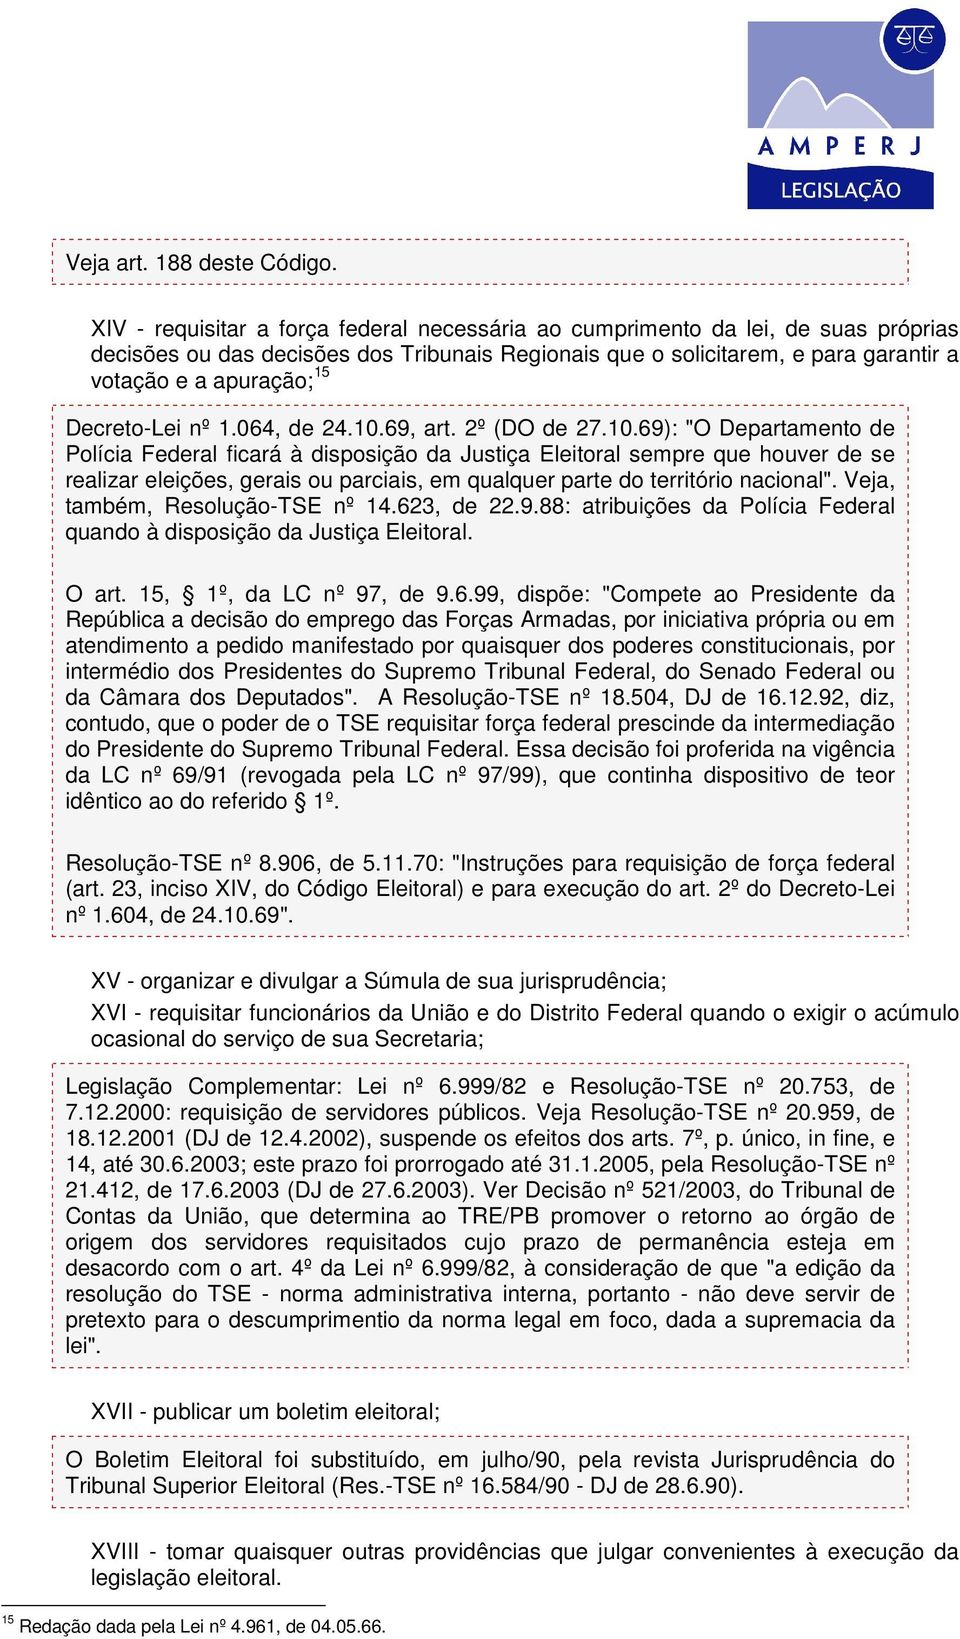 Decreto-Lei nº 1.064, de 24.10.